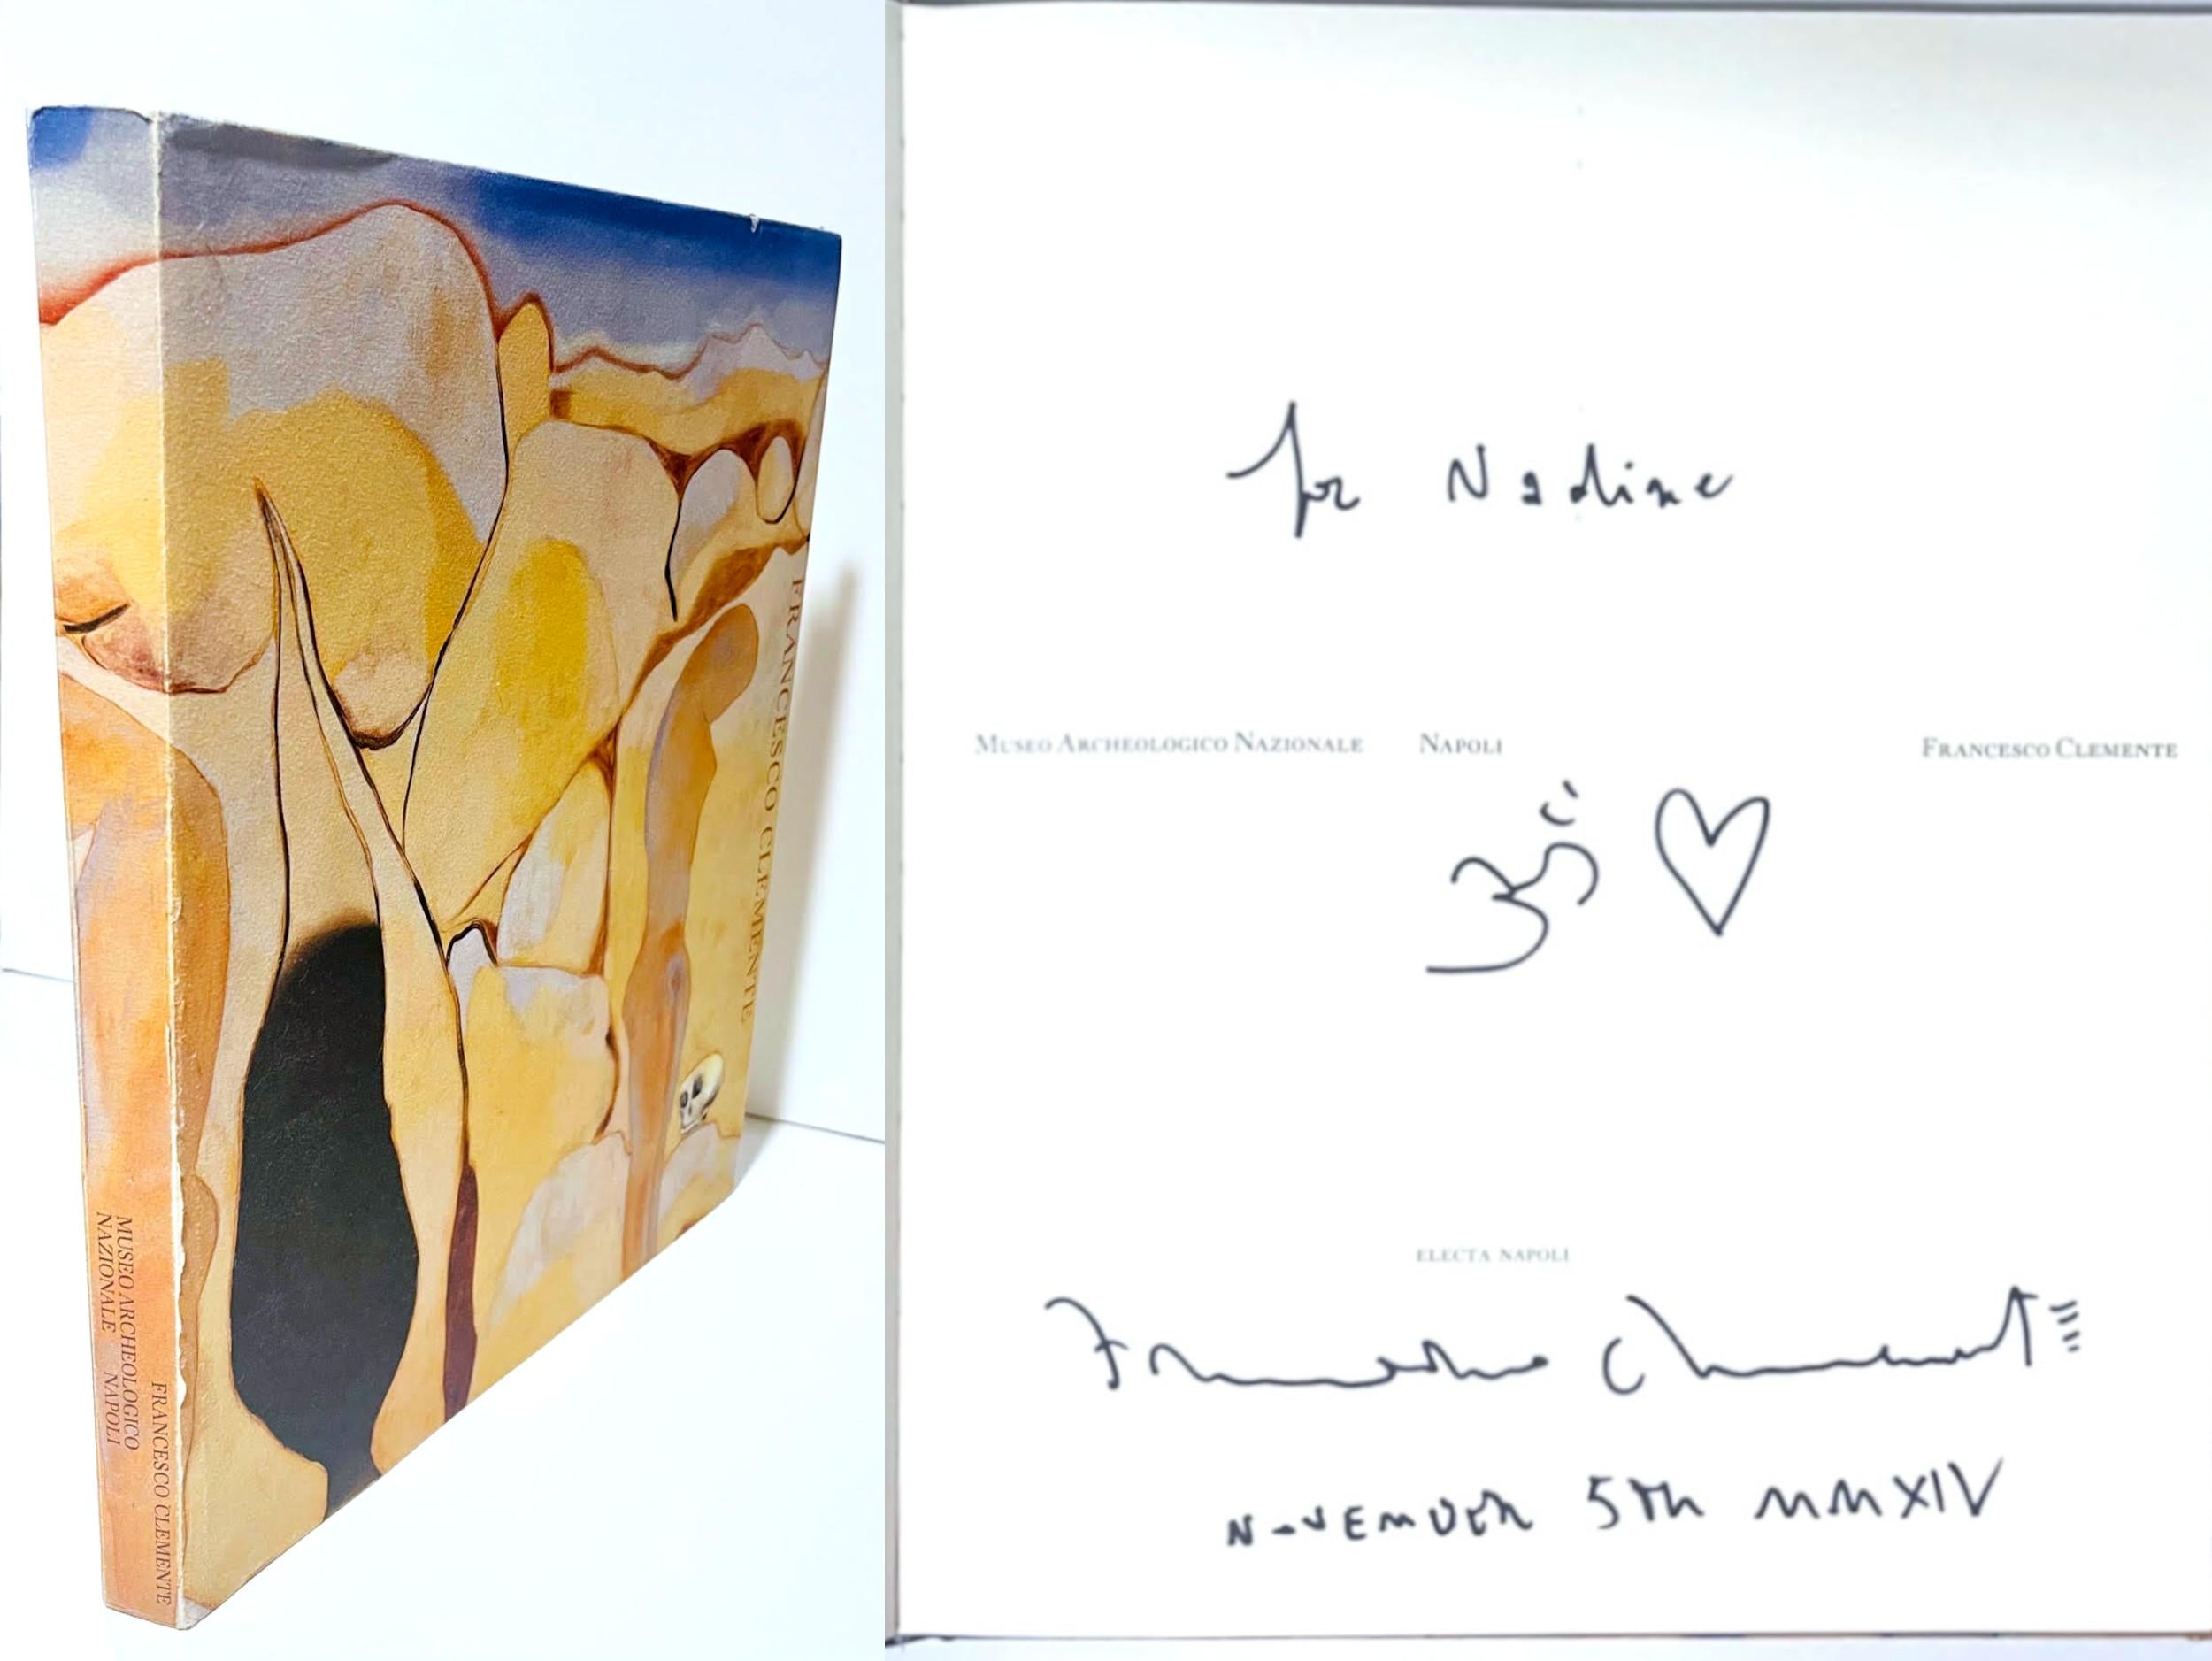 Francesco Clemente (signé à la main, inscrit et daté 2014 (MMXIV) à Nadine avec des dessins au marqueur noir), 2002.
Monographie reliée avec jaquette (Signée à la main, inscrite et datée 2014 (MMXIV) à Nadine avec des gribouillis au marqueur